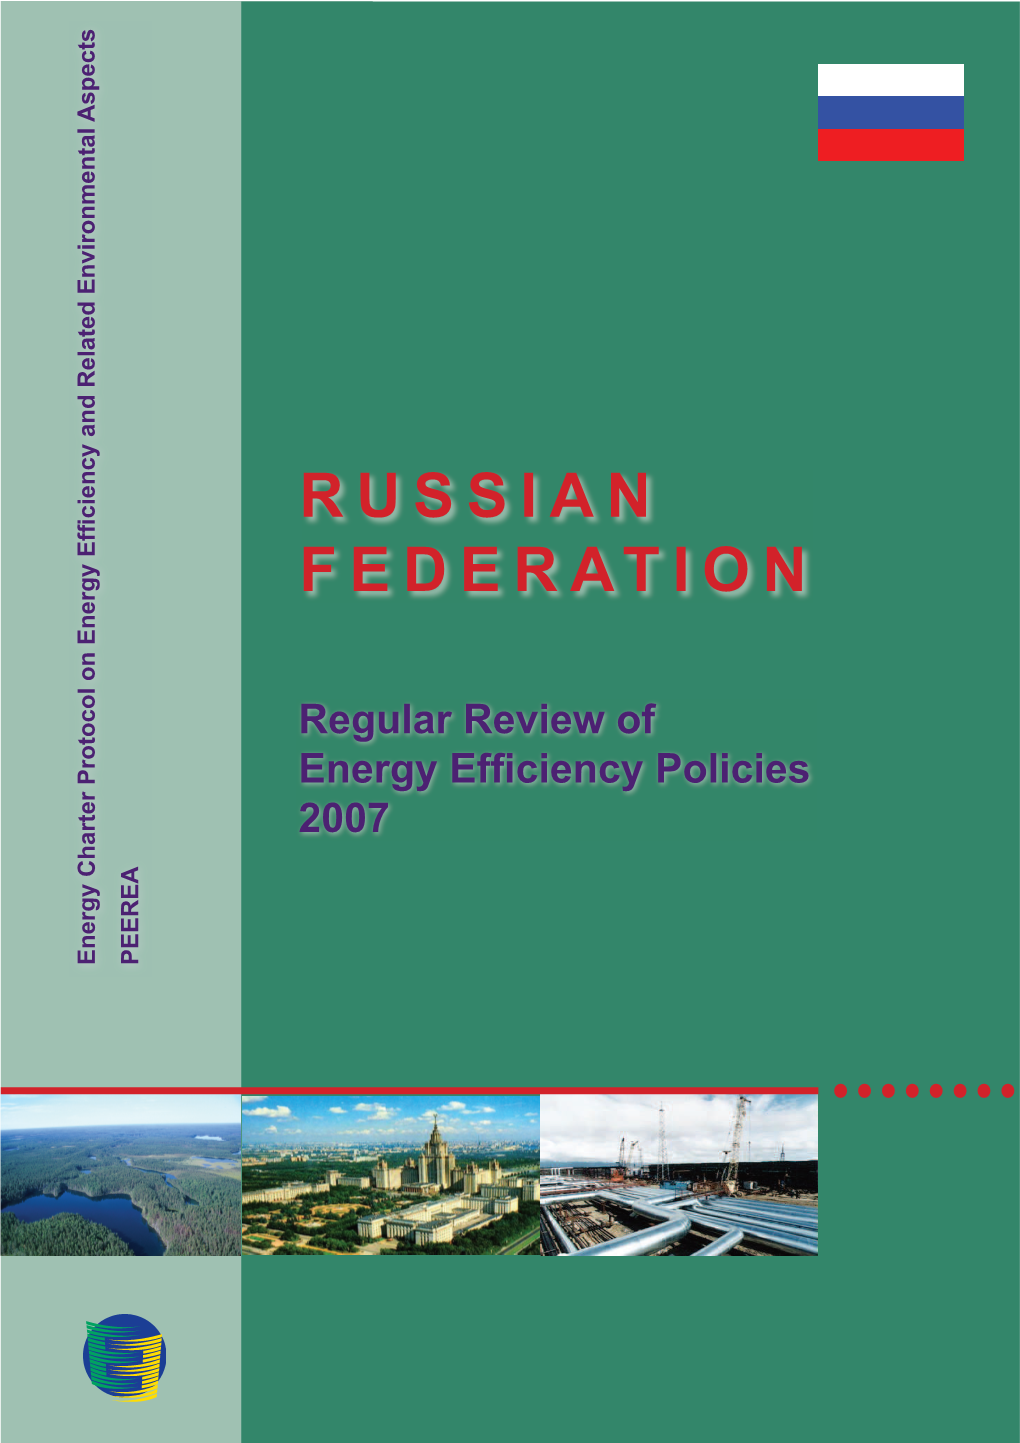 Regular Review of Energy Efficiency Policies 2007